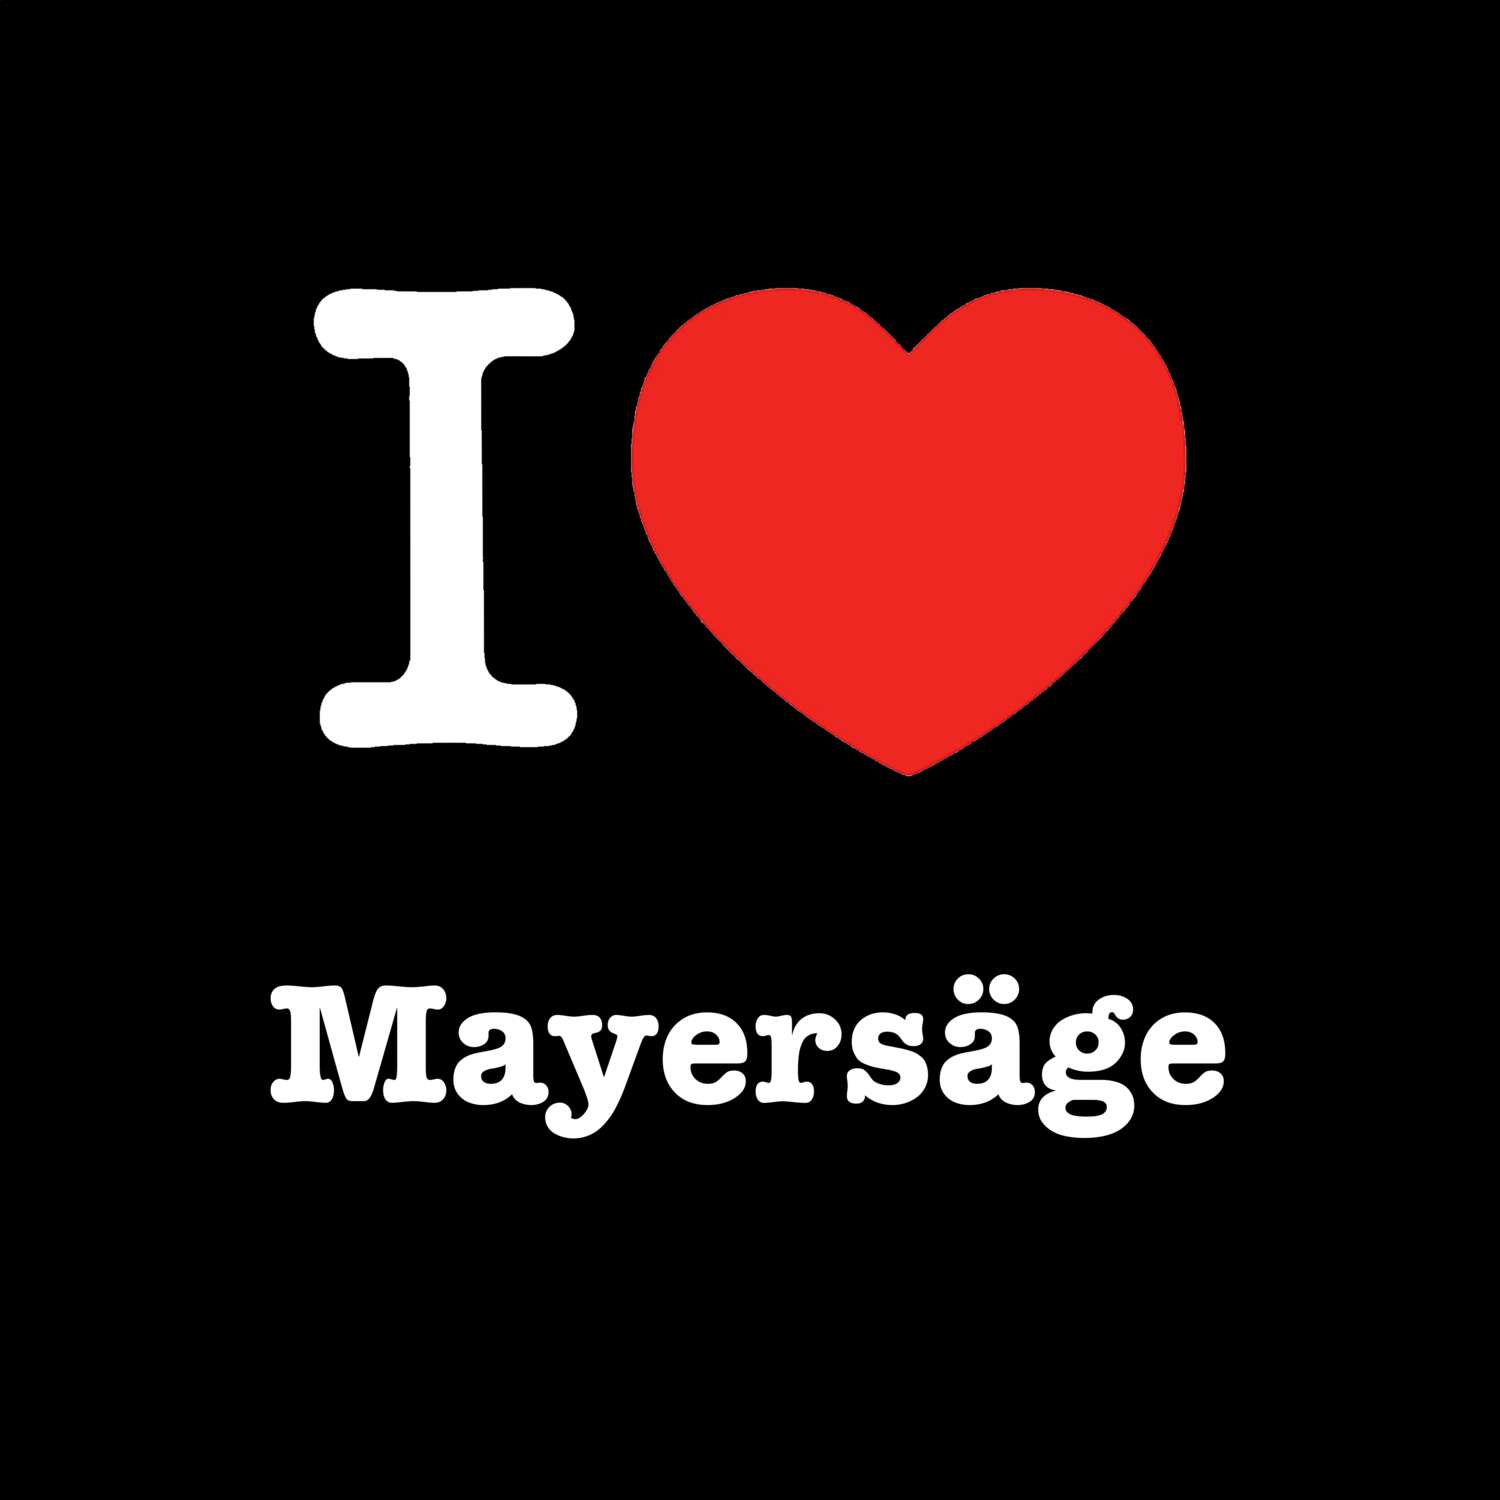 Mayersäge T-Shirt »I love«